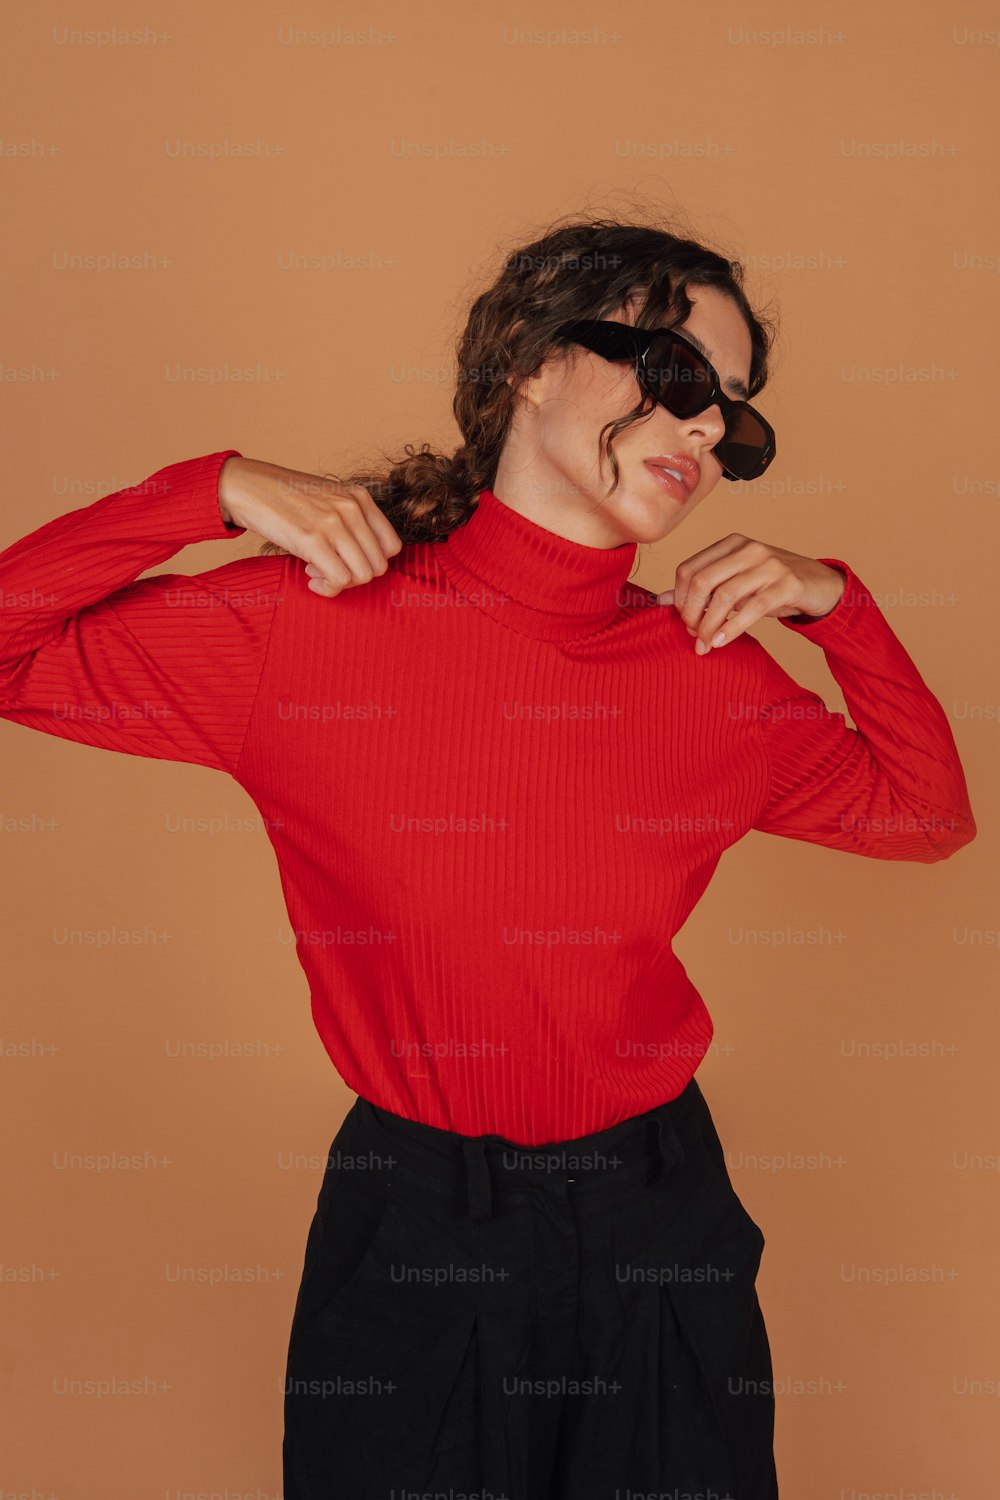 Una mujer con un top rojo y pantalones negros